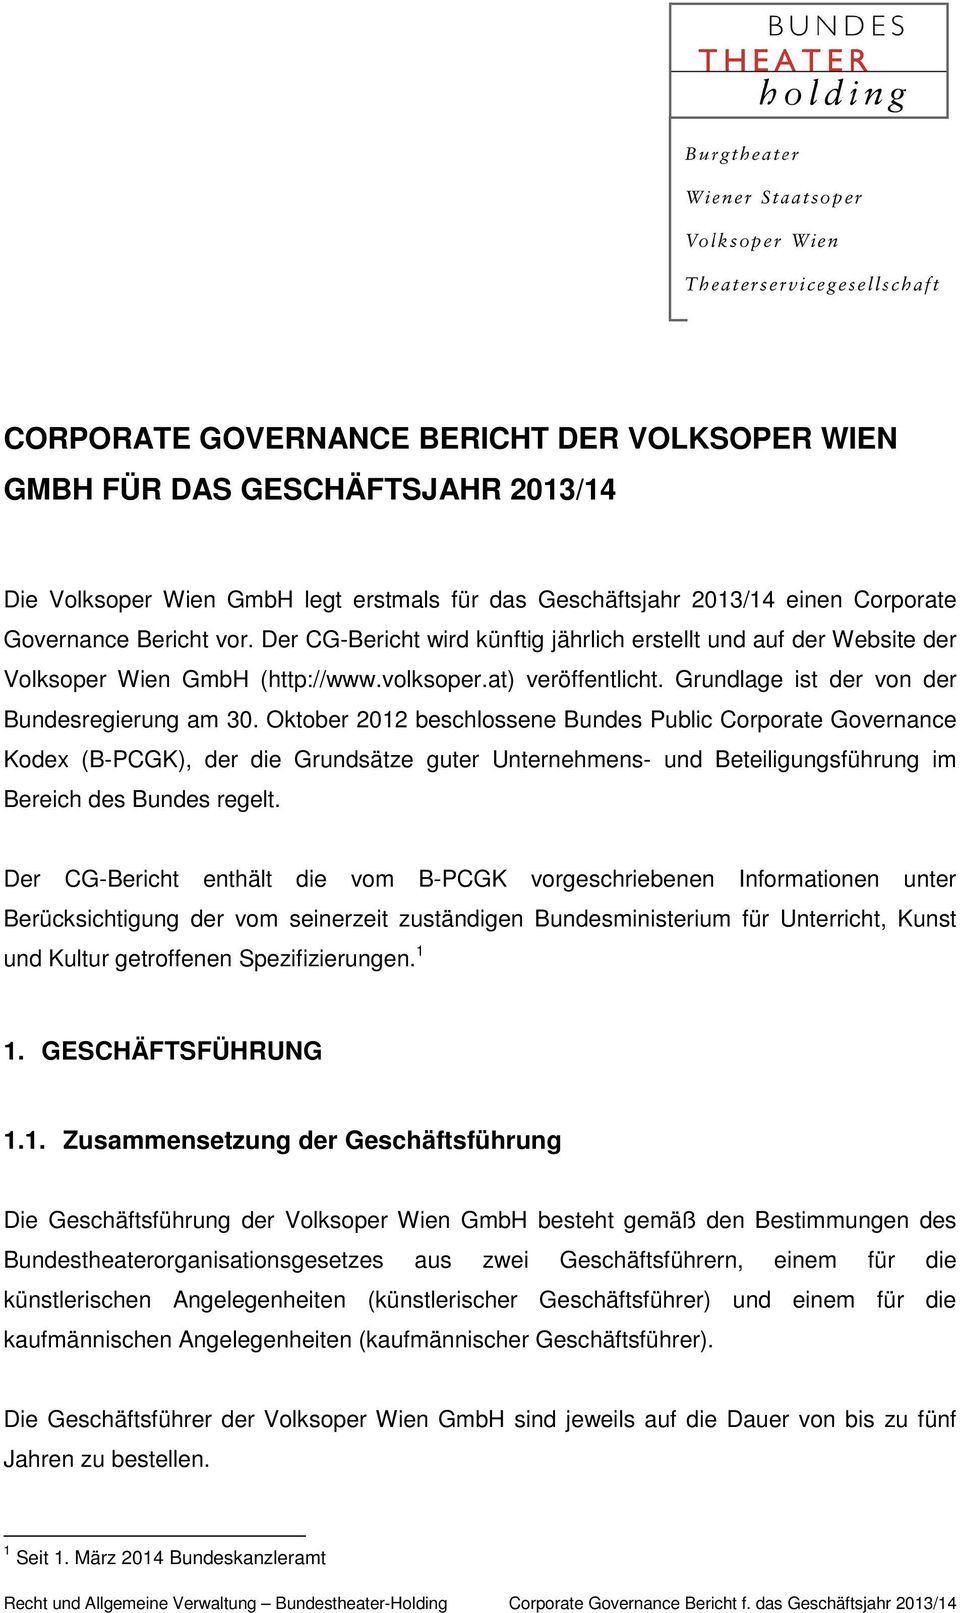 Oktober 2012 beschlossene Bundes Public Corporate Governance Kodex (B-PCGK), der die Grundsätze guter Unternehmens- und Beteiligungsführung im Bereich des Bundes regelt.